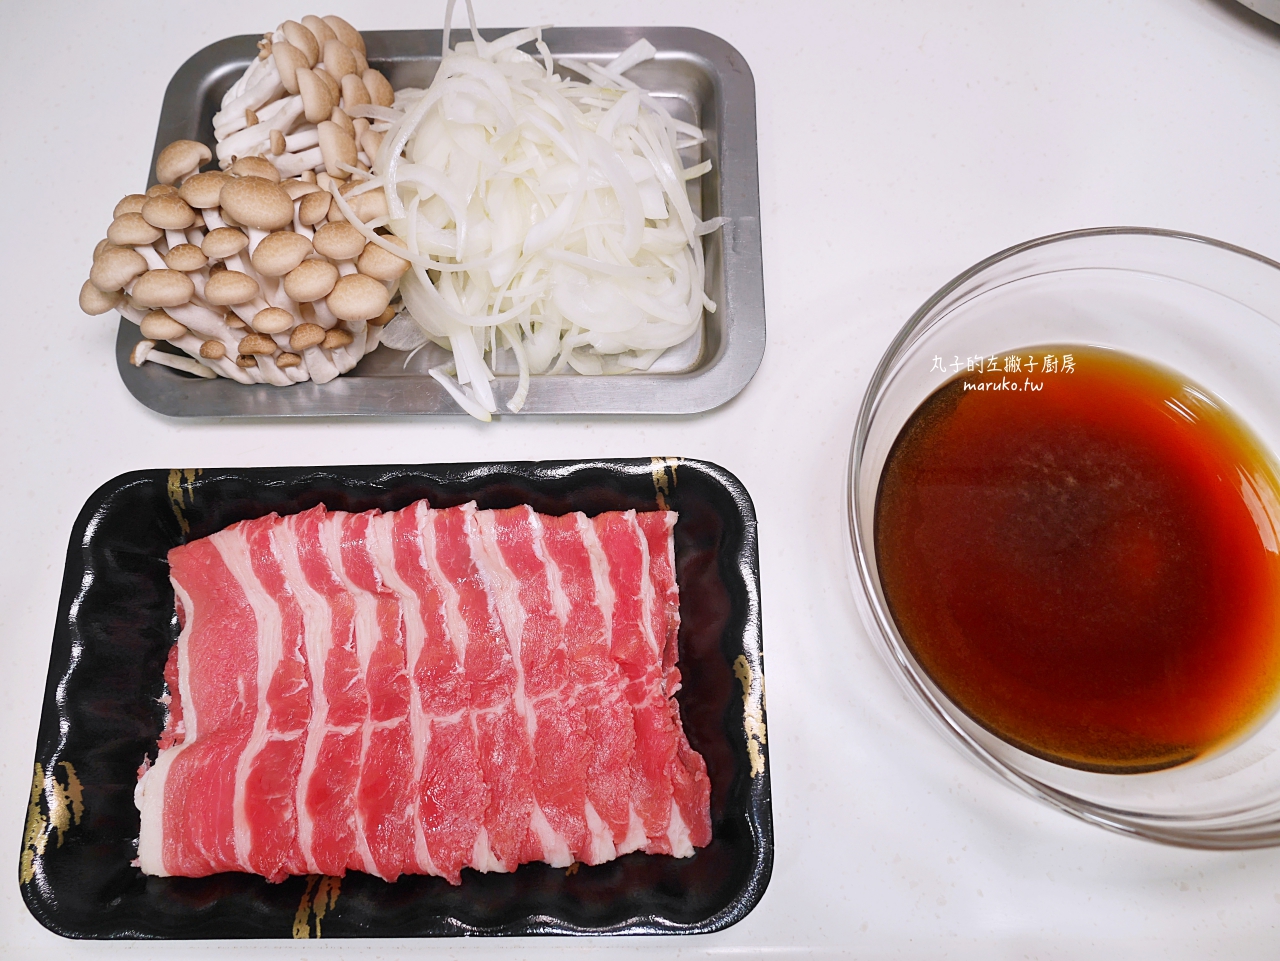 【食譜】15種牛肉食譜 異國風用料理環遊世界(包含日式、西式、韓式、東南亞料理)一次收藏！ @Maruko與美食有個約會